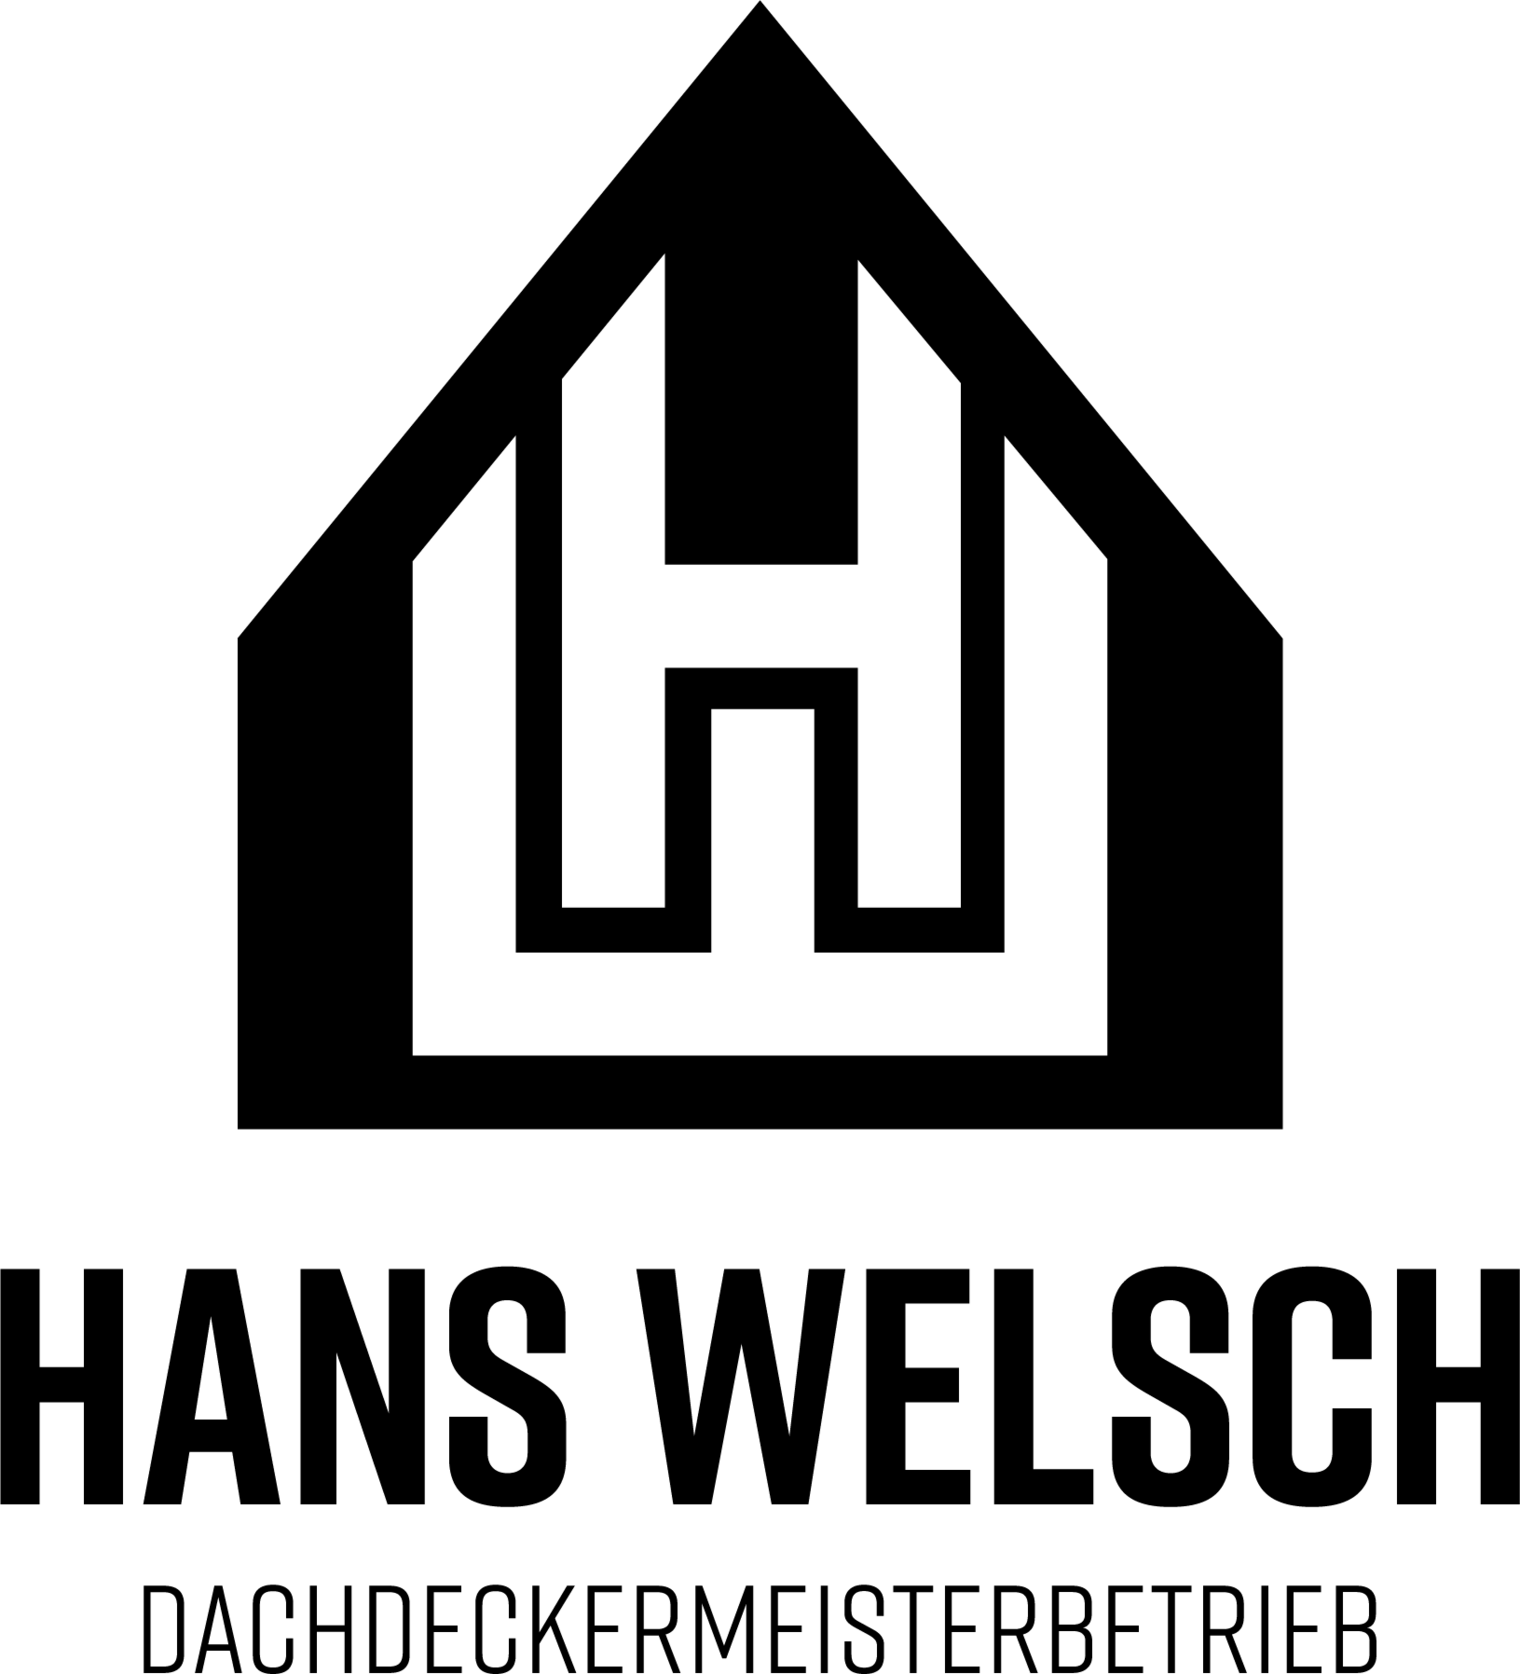 hans-welsch-logo